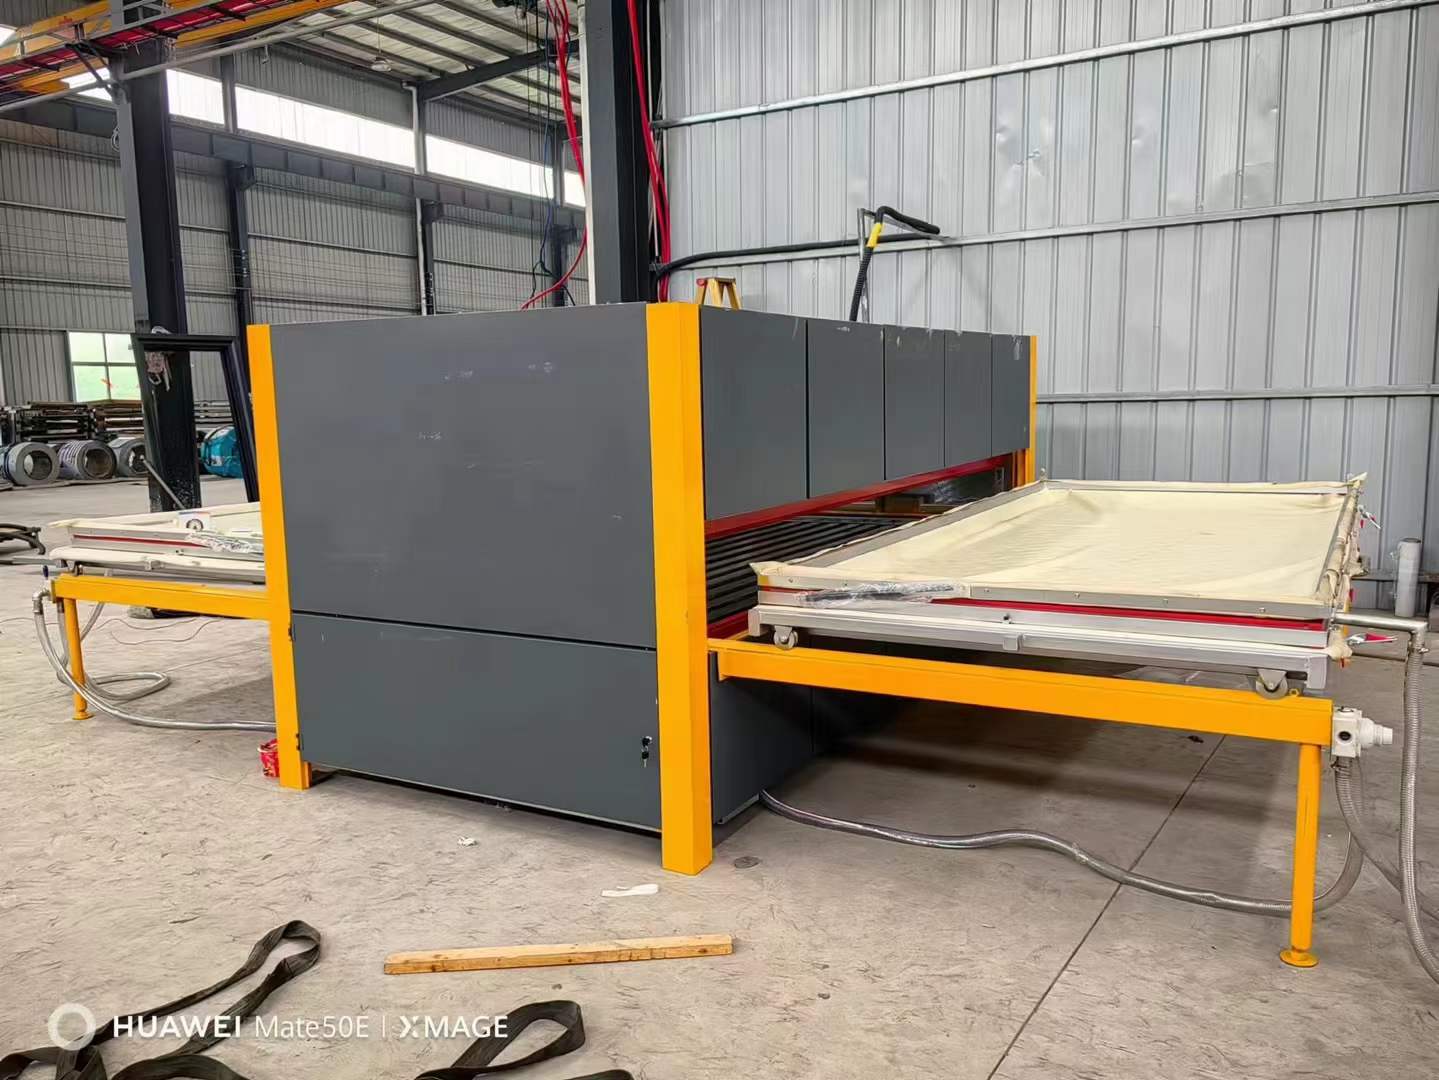 铝板木纹转印机 真空吸附电加热技术 2个普工即可操作 无需技术工